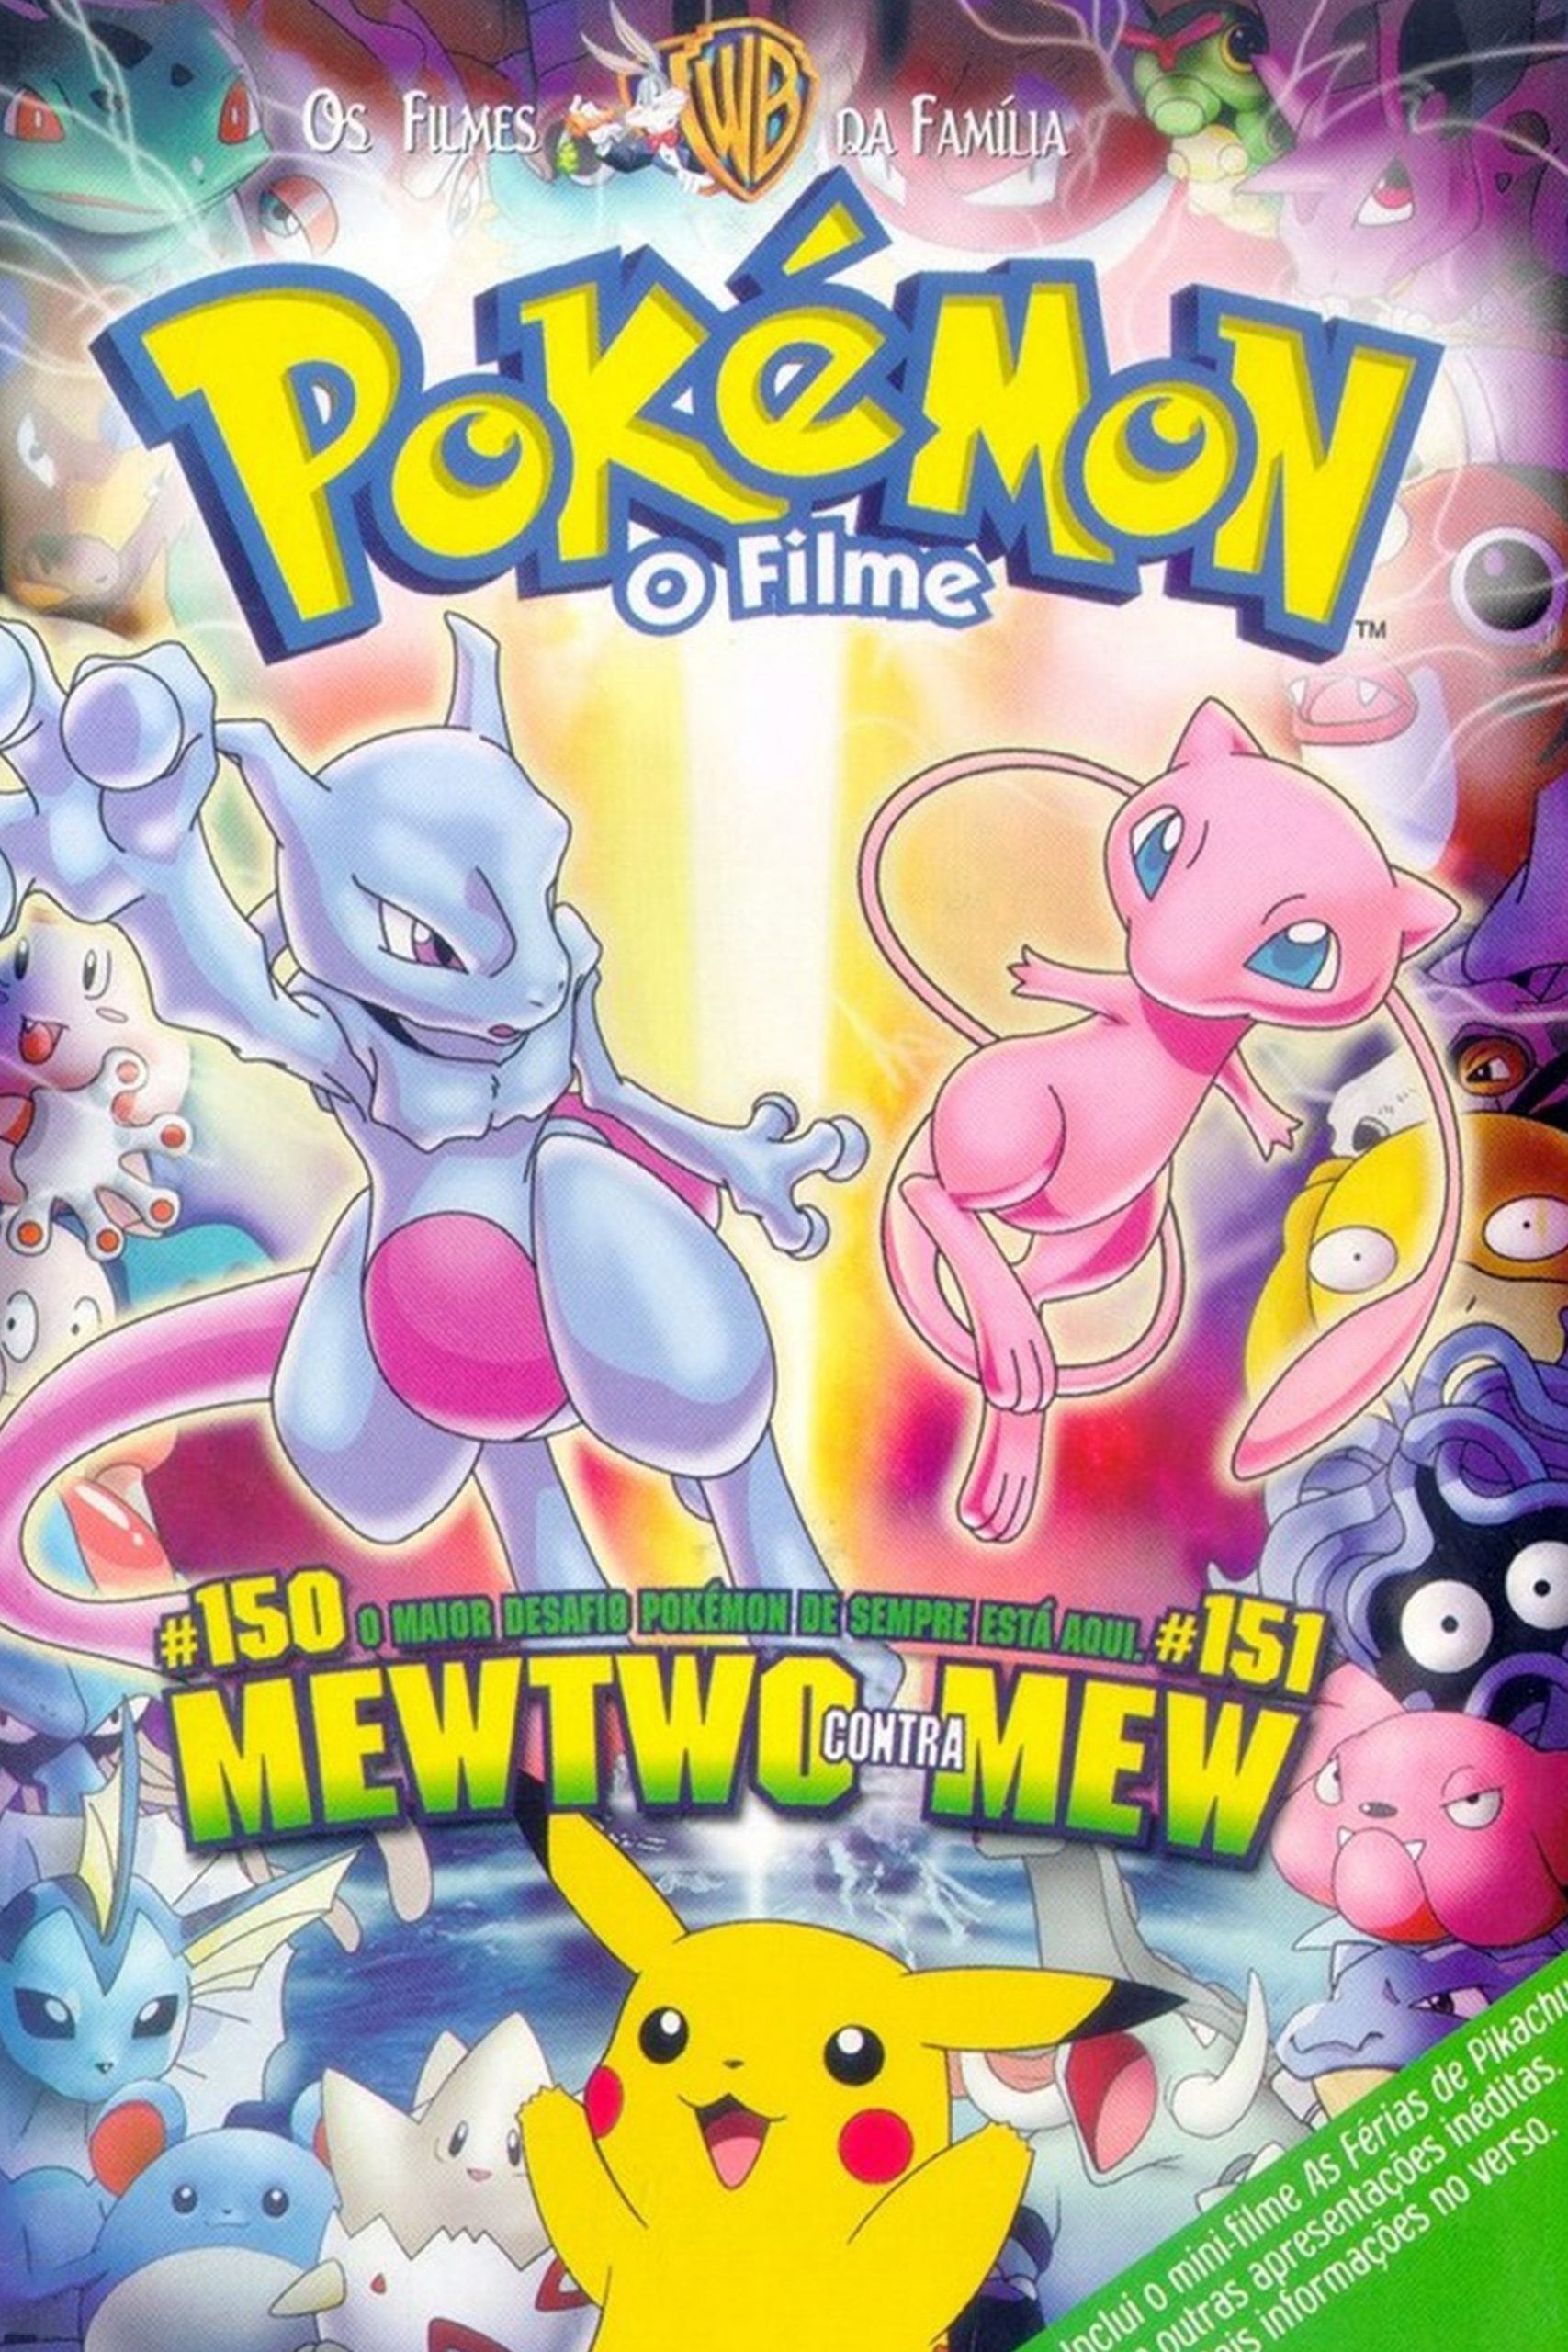 Cinerama - Pokémon: Mewtwo Contra-Ataca (2019) Direção